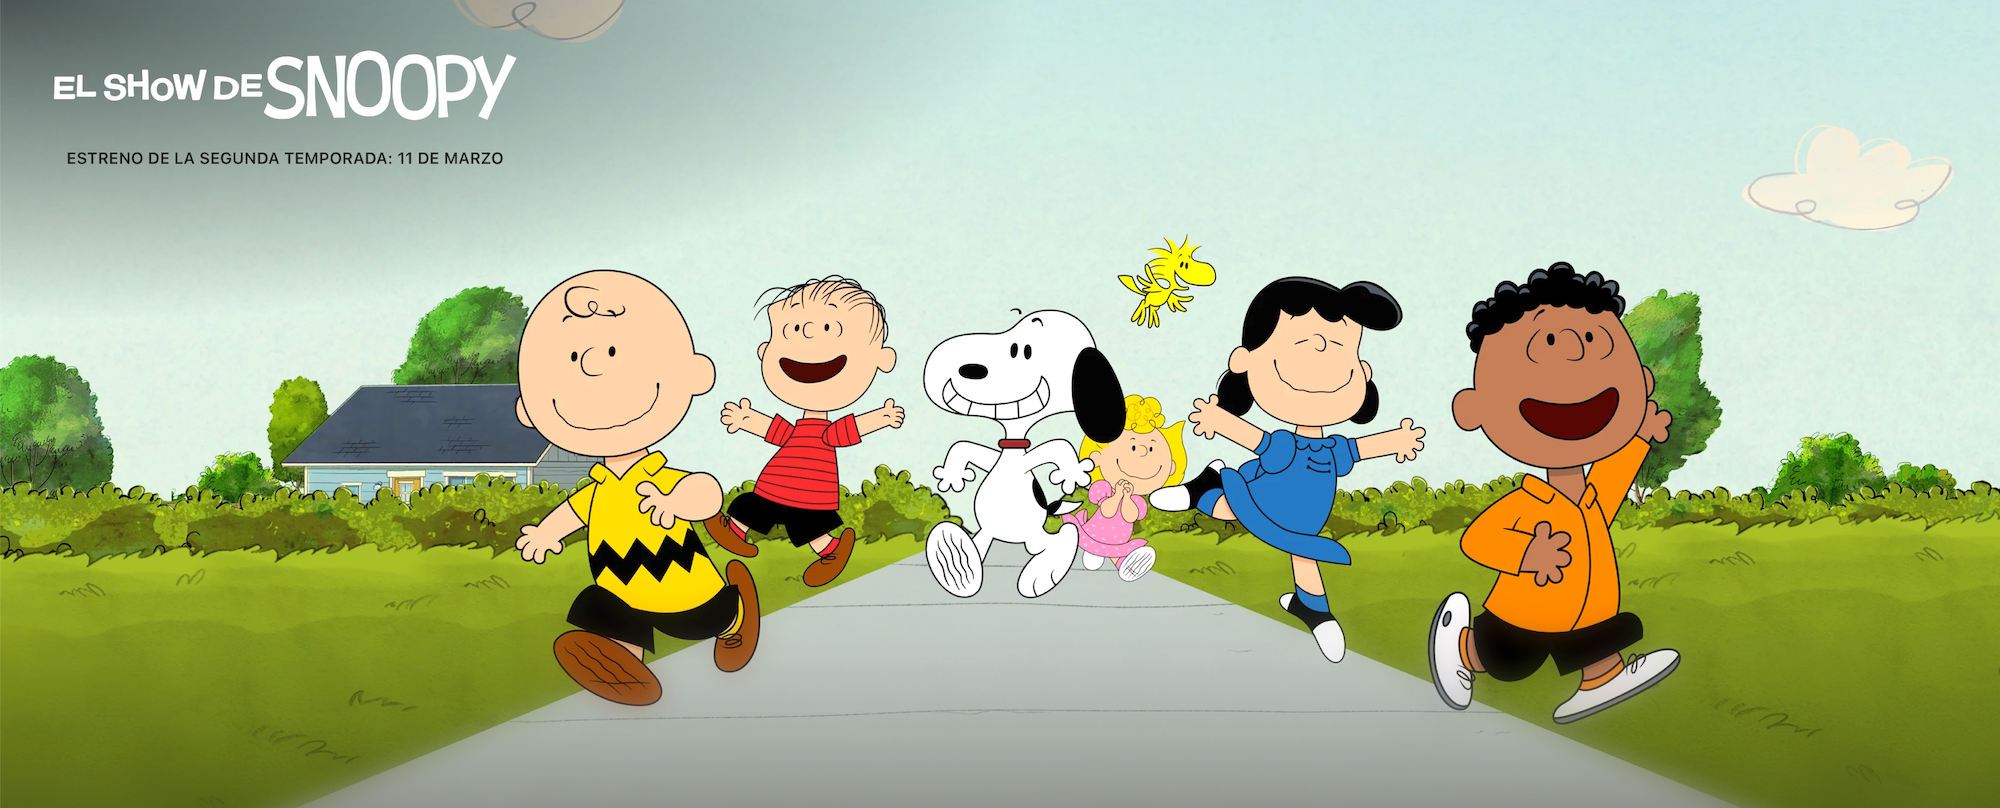 Apple TV+, el hogar de Snoopy y "Peanuts": catálogo actual y novedades por venir